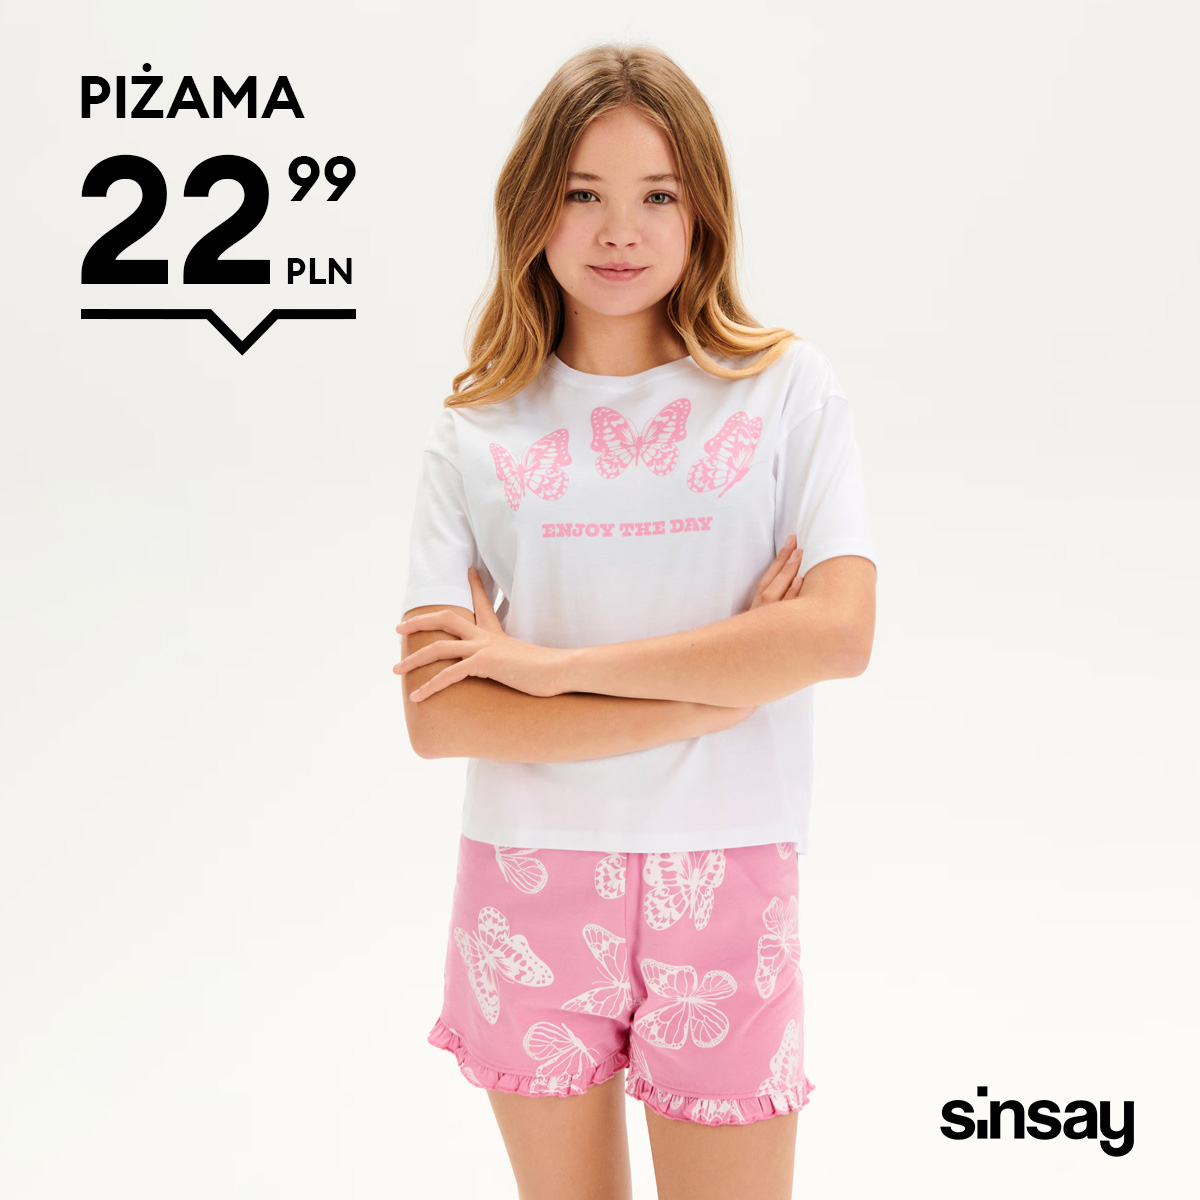 Wygodne piżamki i koszule nocne dla Twoich dzieci znajdziesz w Sinsay!